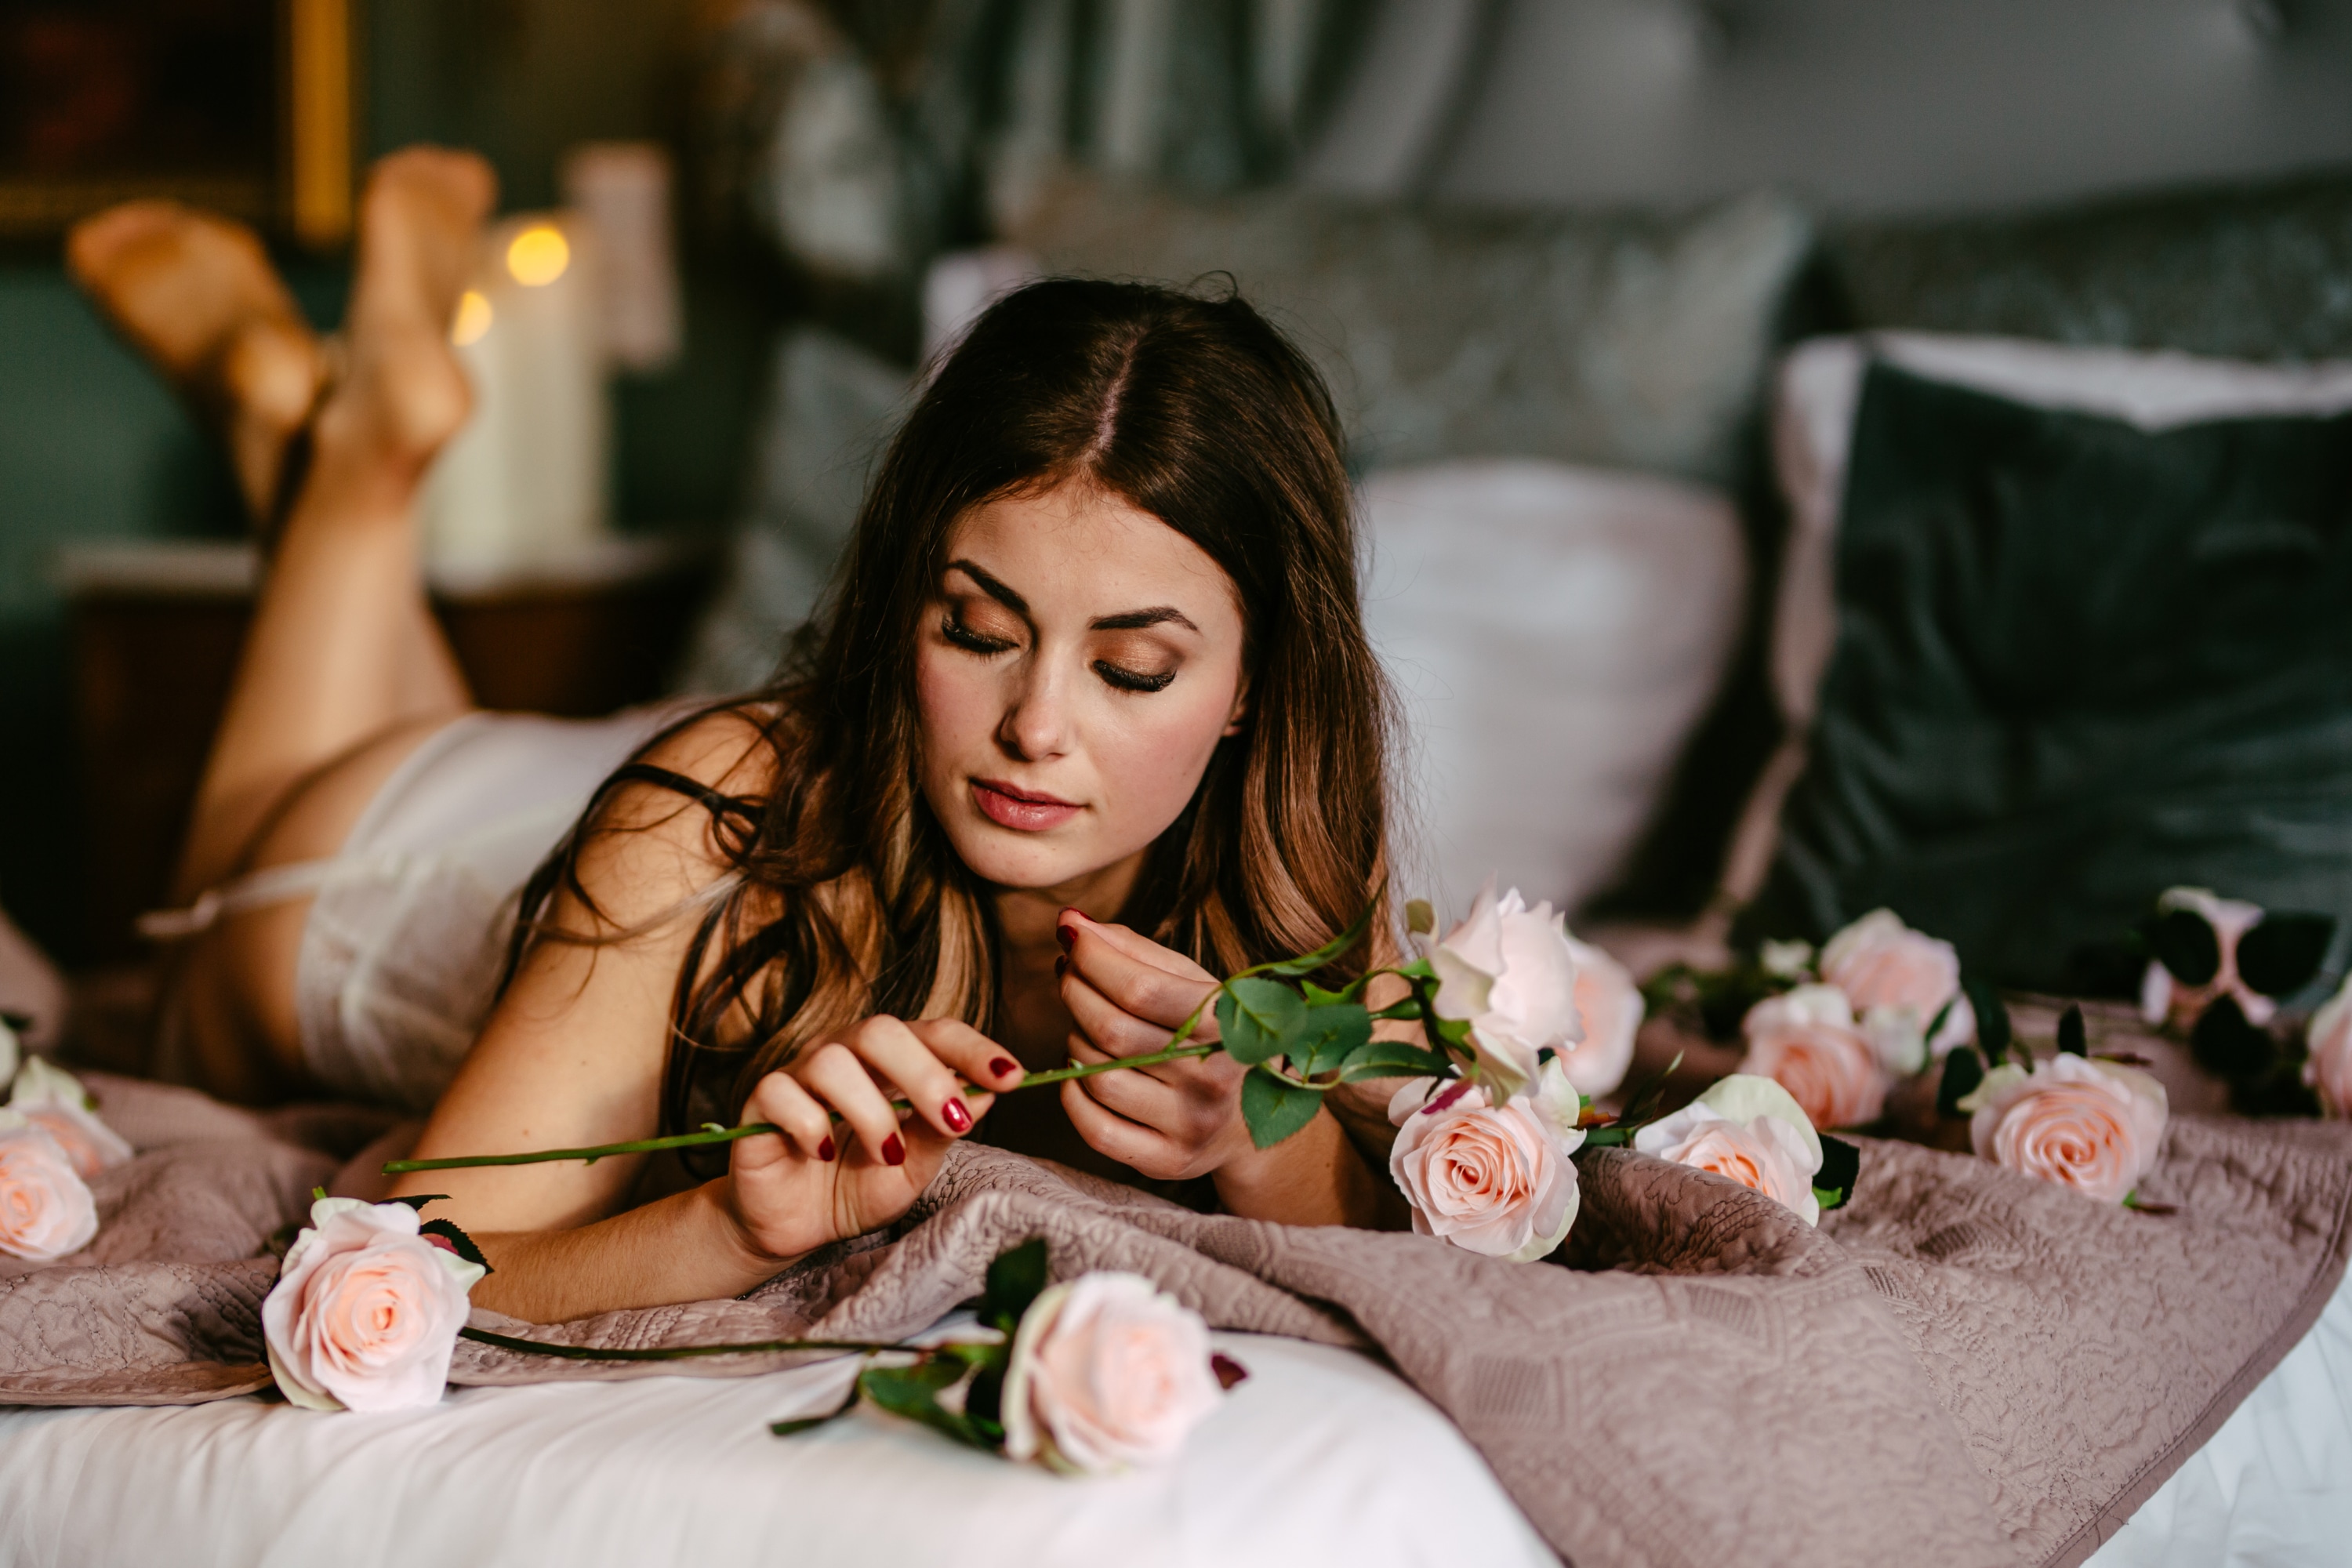 Een vrouw liggend op een bed met rozen.